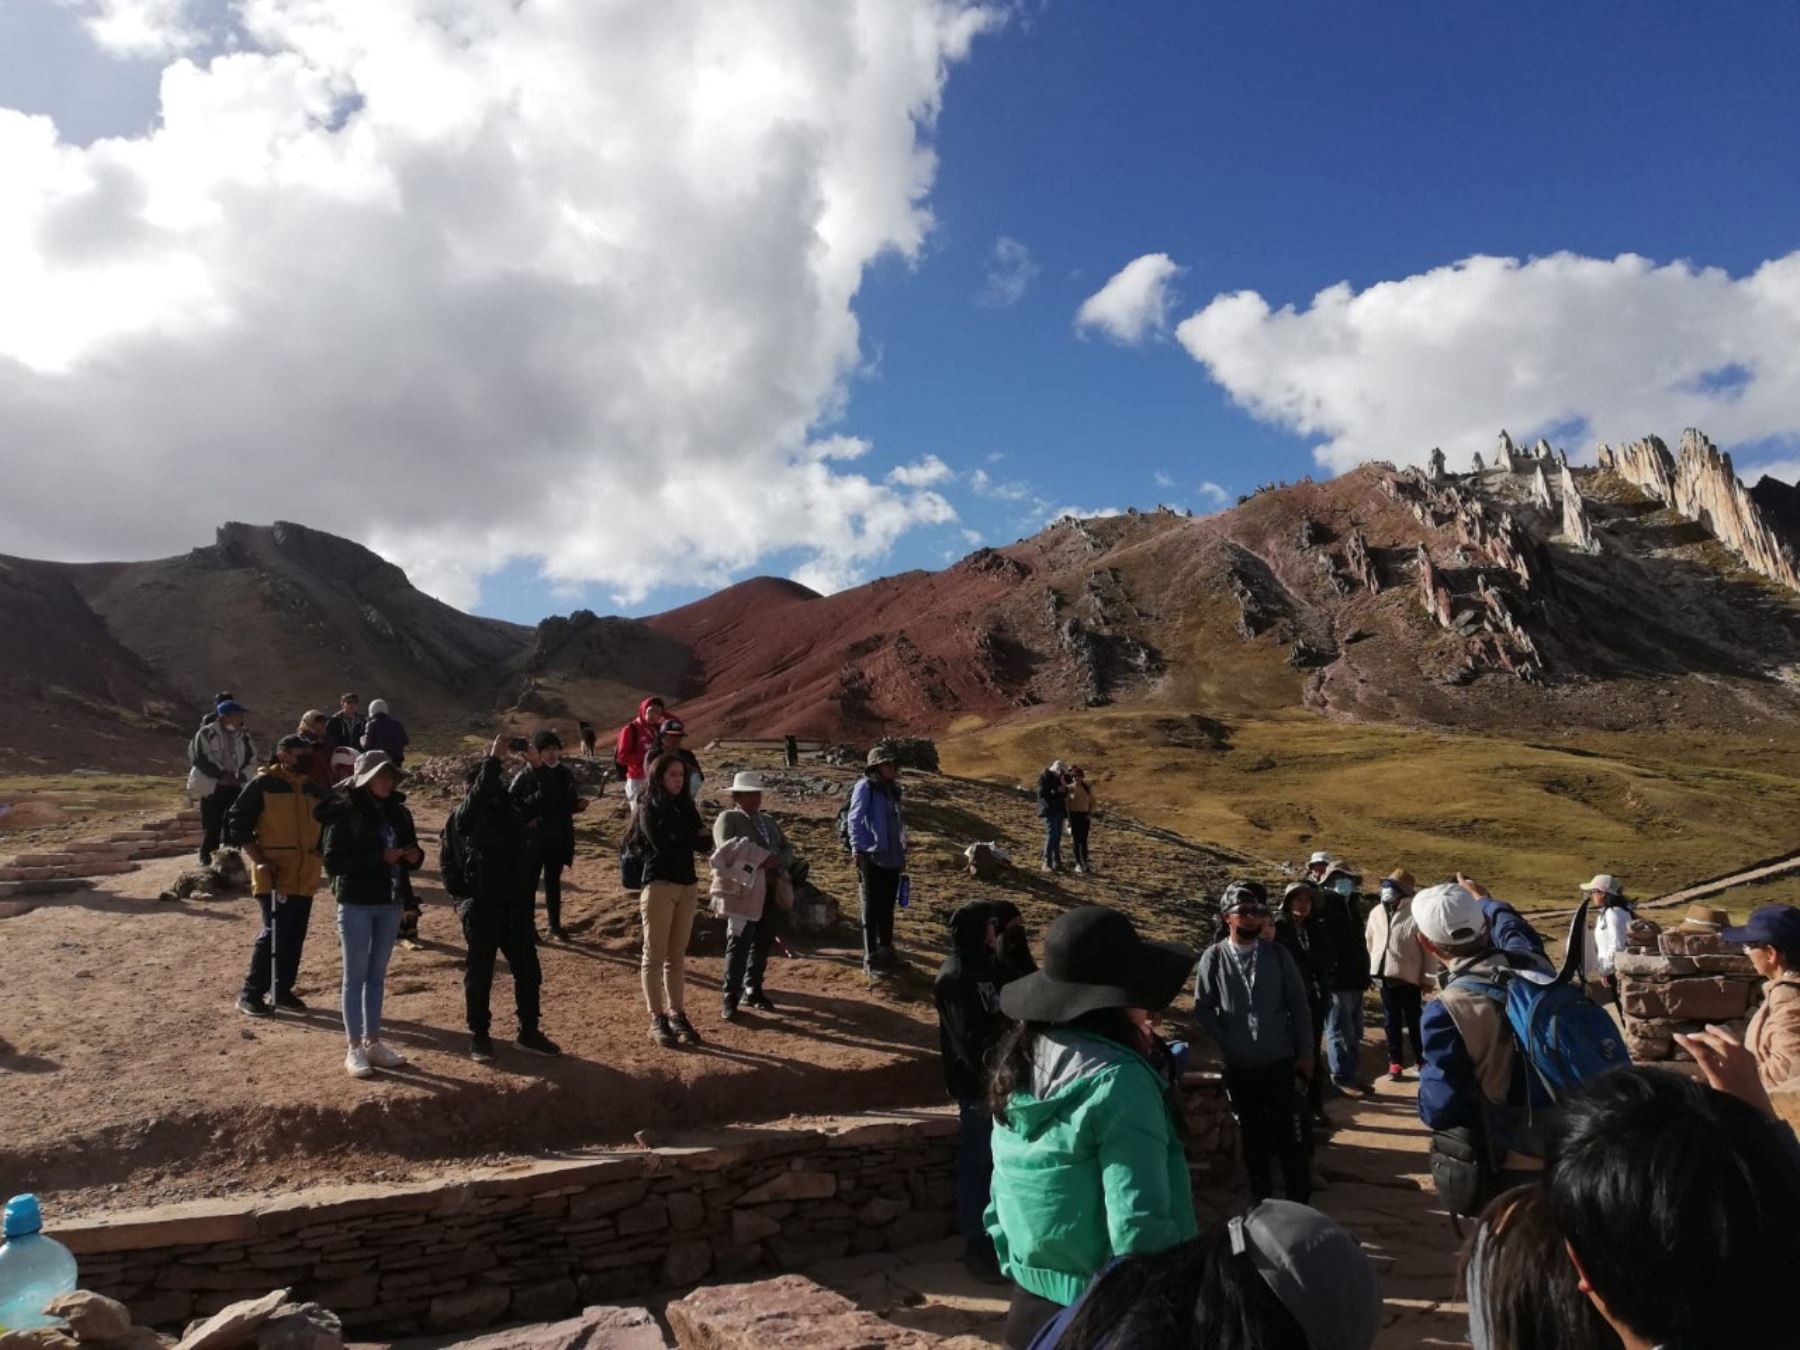 Rutas del Imperio, se denomina la campaña de turismo social de Cusco que promociona entre los viajeros locales ocho nuevos circuitos turísticos de dicha región. ANDINA/Difusión